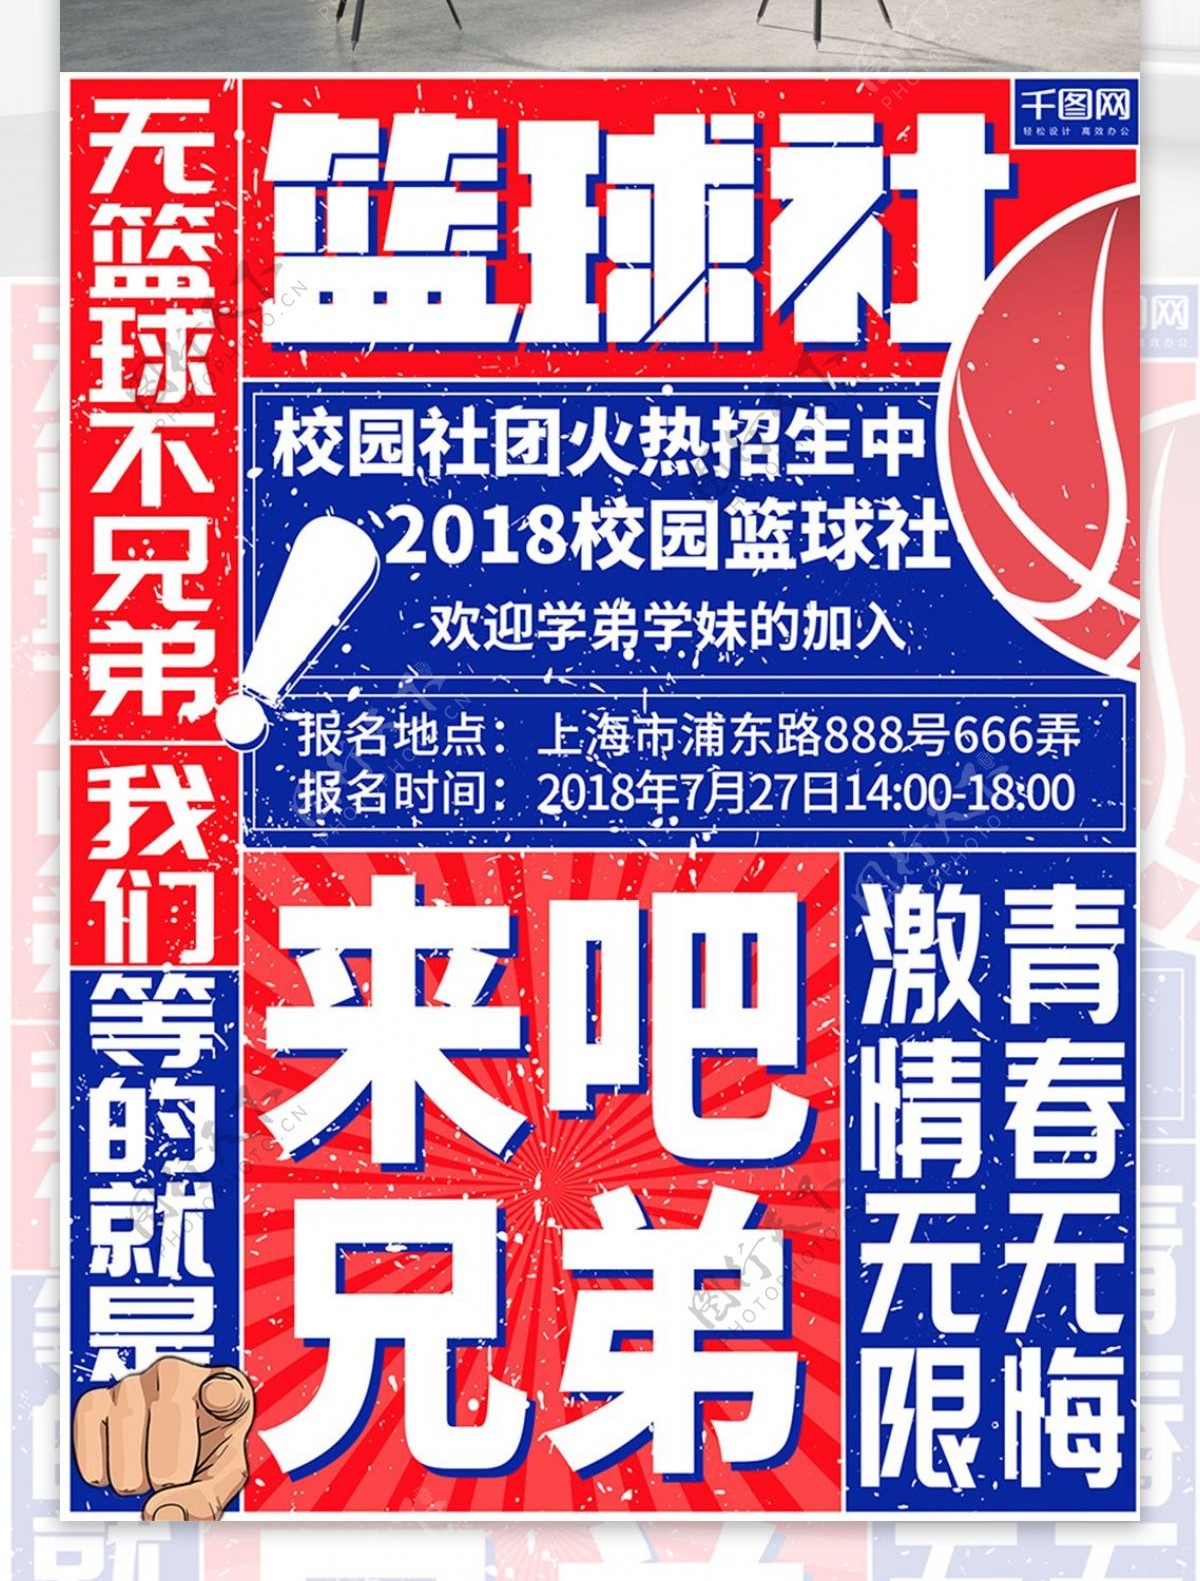 红蓝简约篮球社招新海报